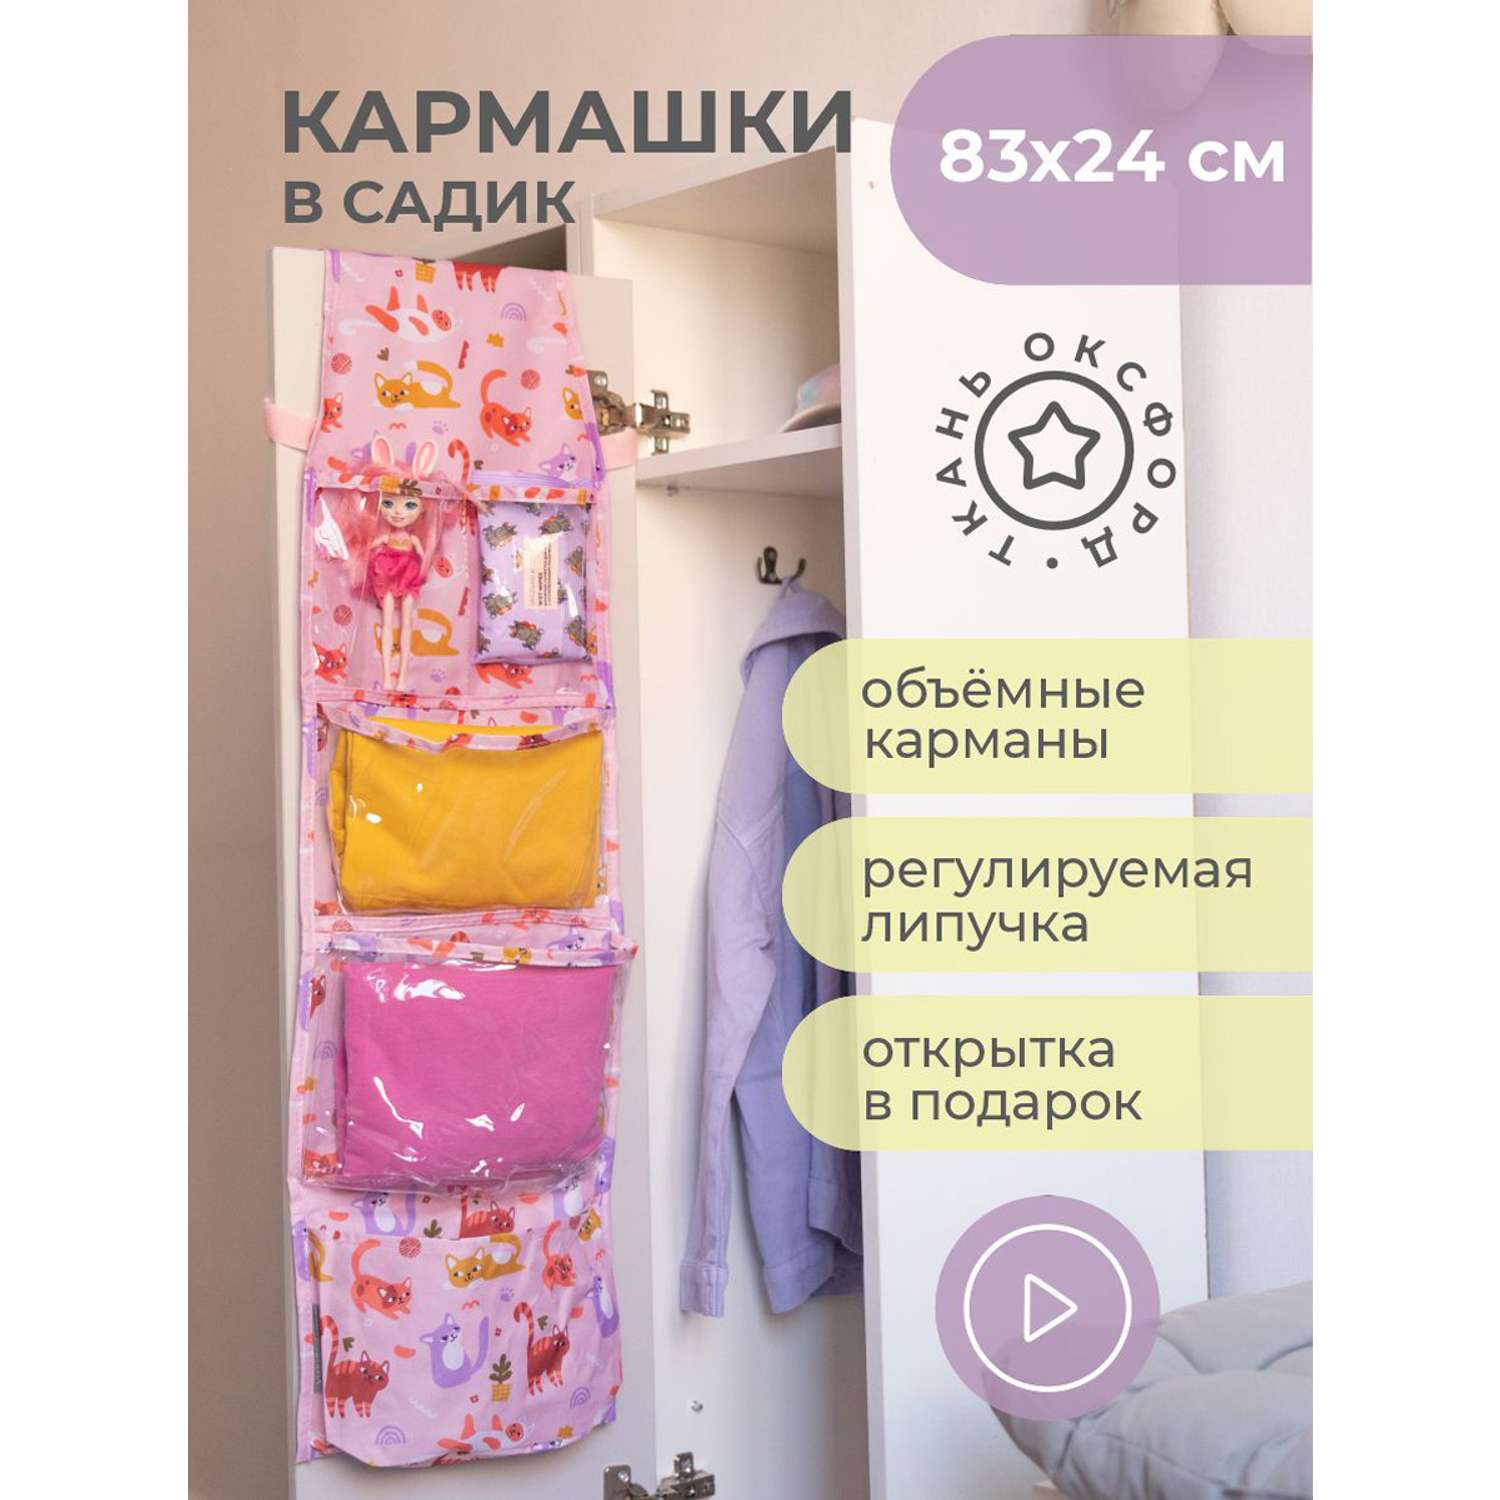 Кармашки для шкафчиков в детский сад!!! | ВКонтакте